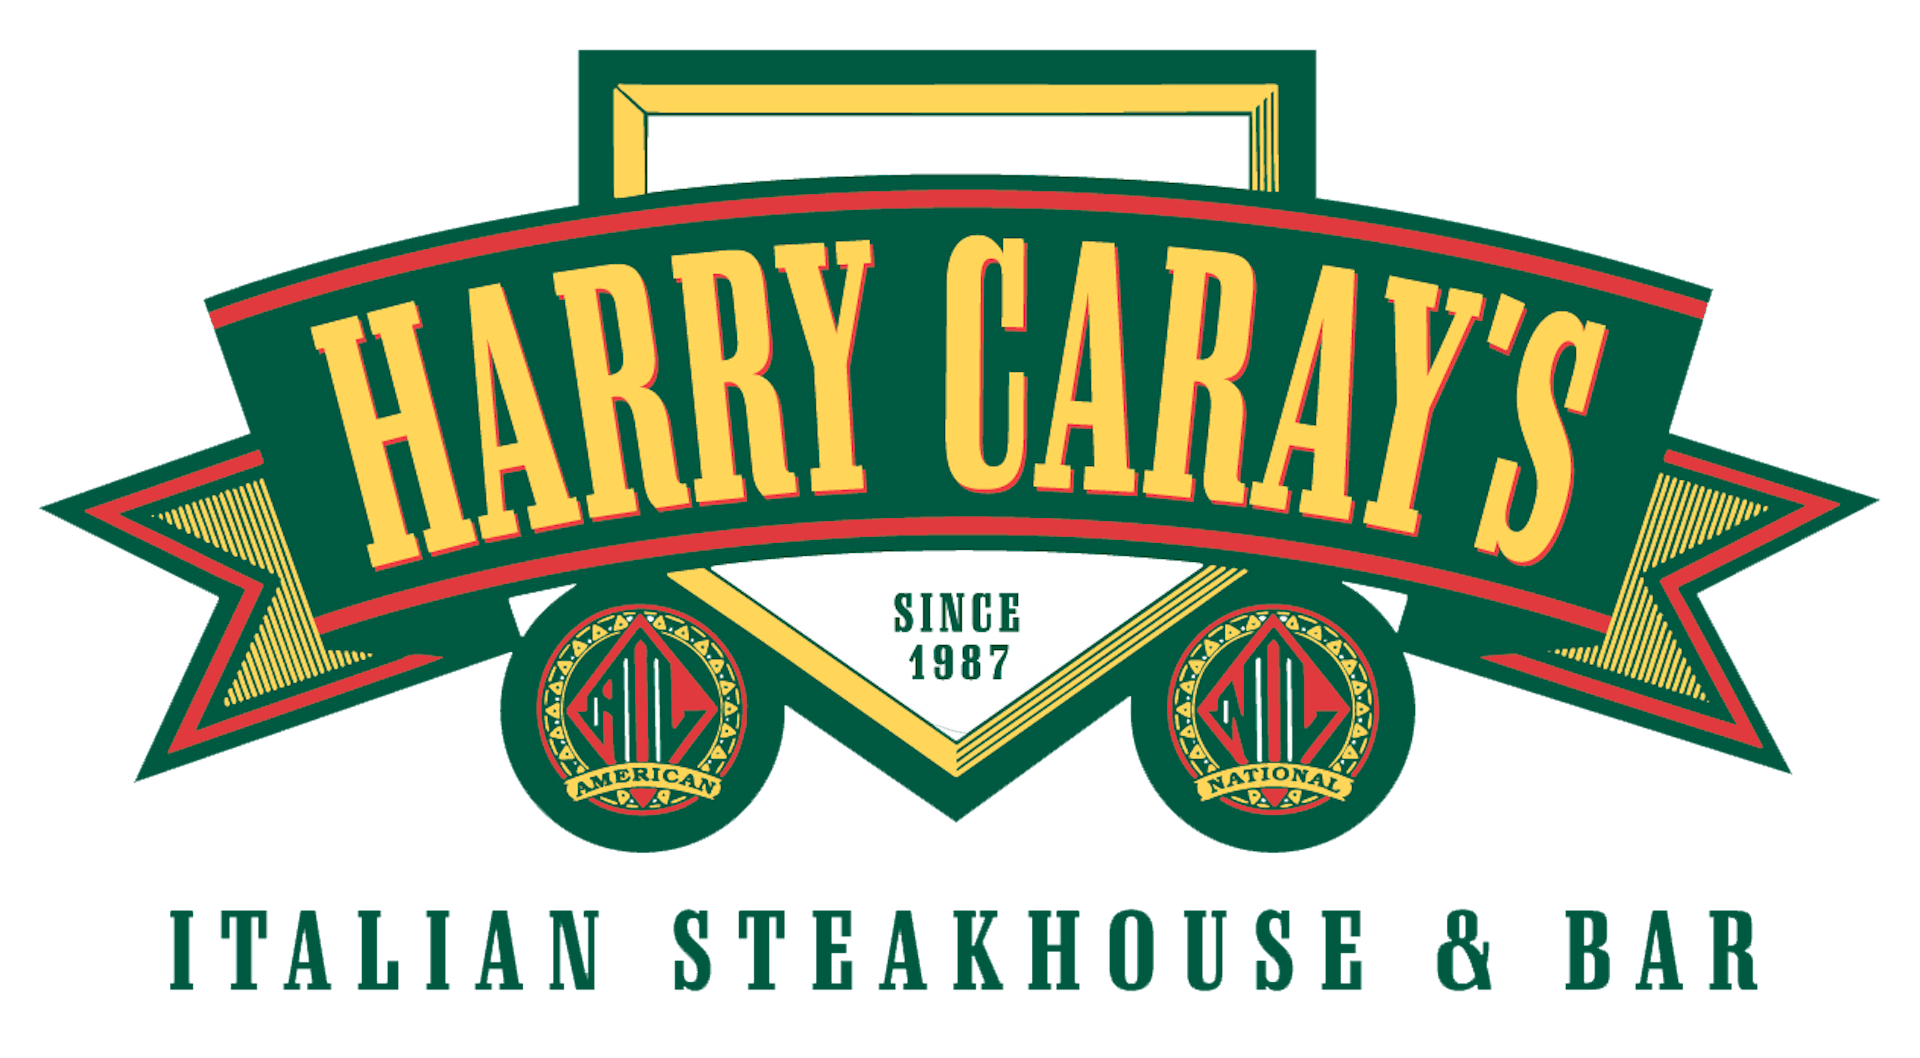 Toast to Harry Caray